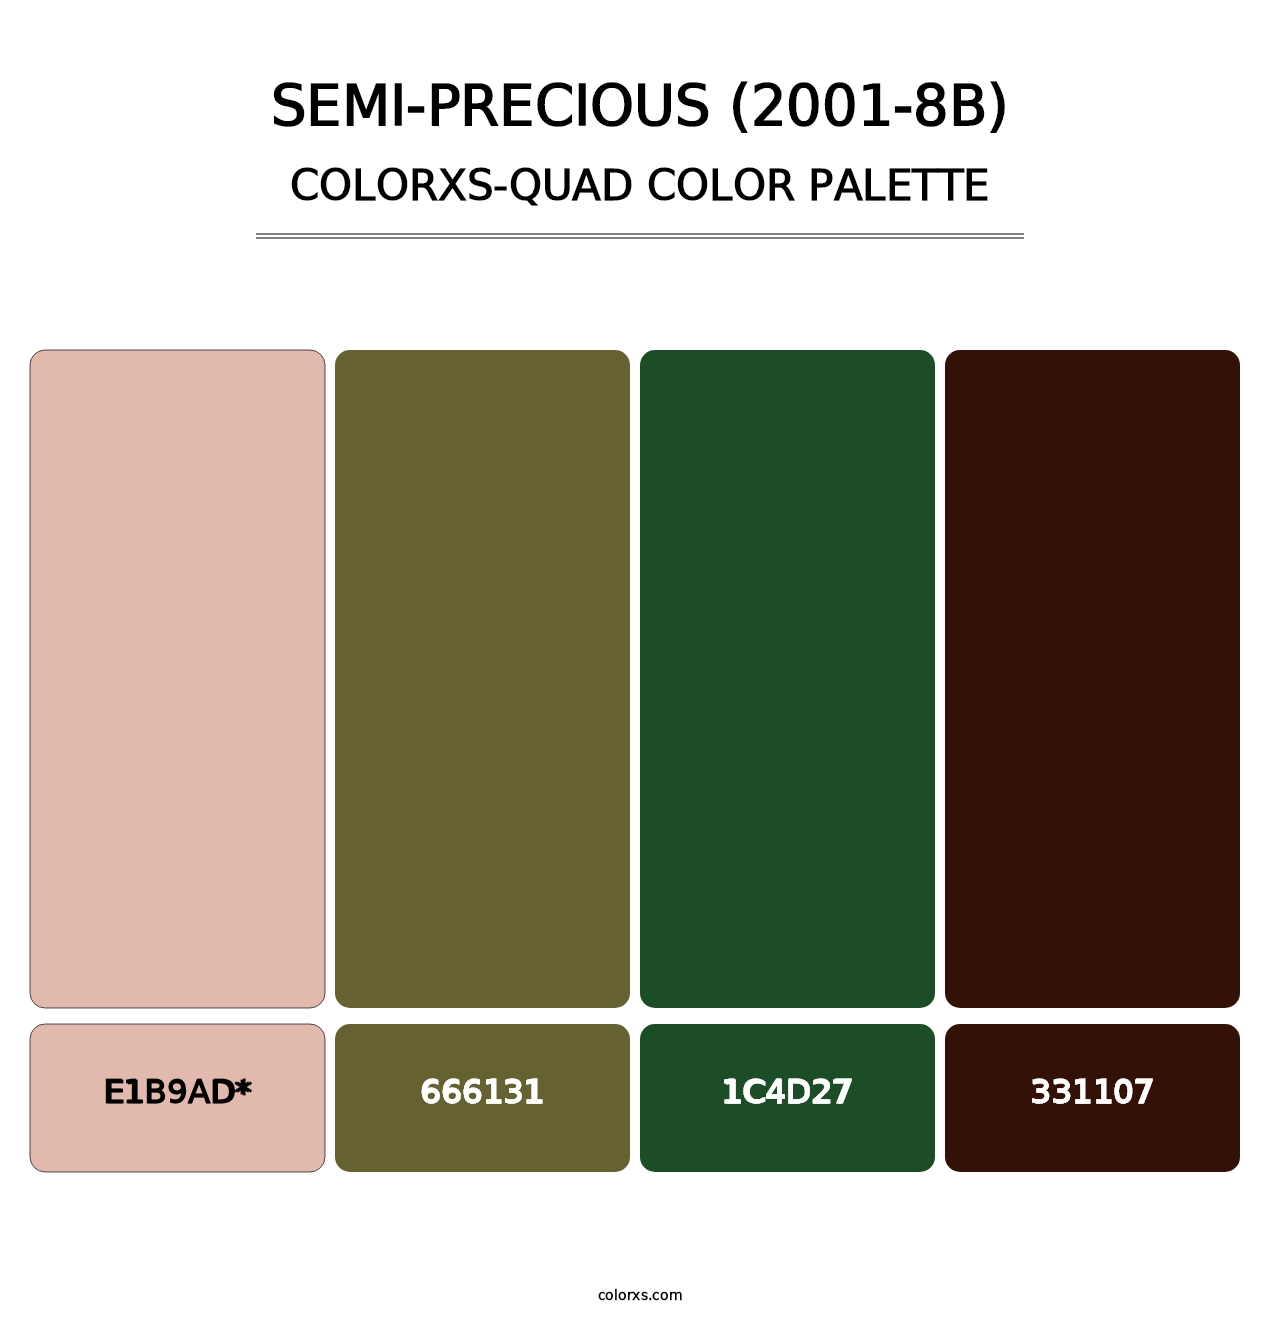 Semi-Precious (2001-8B) - Colorxs Quad Palette